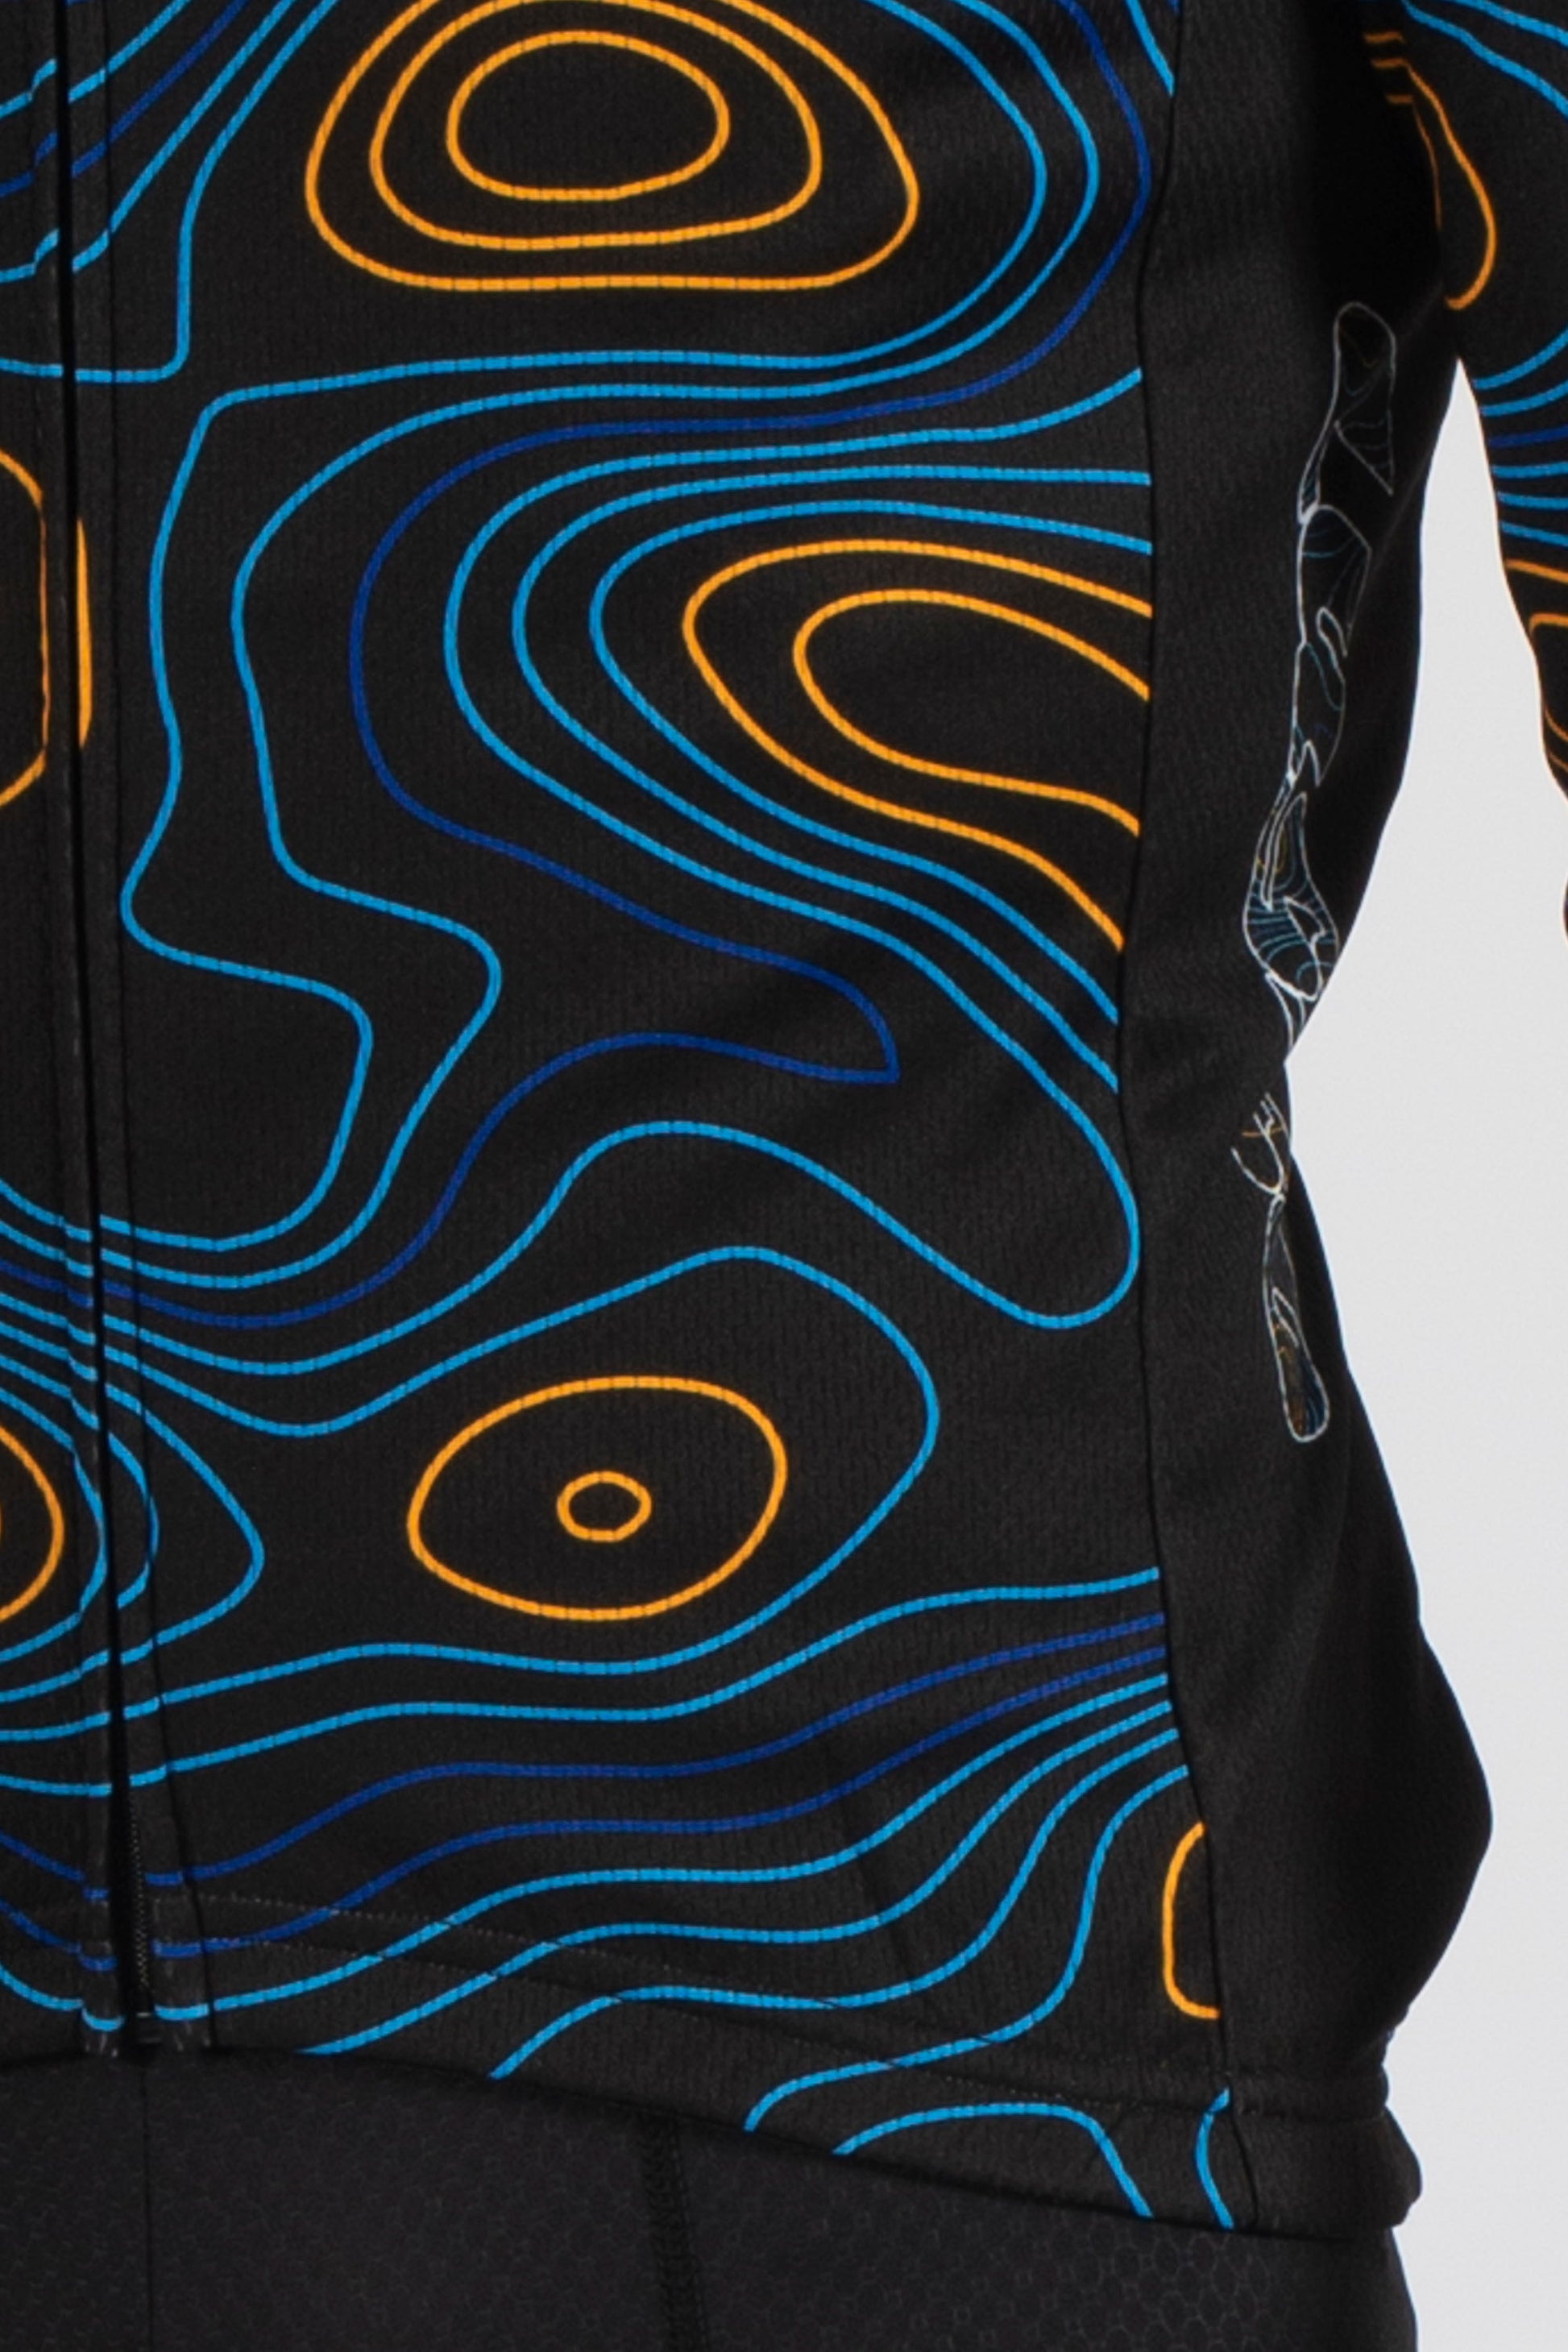 Terrain Black Long Sleeve Jersey - Lusso Cycle Wear